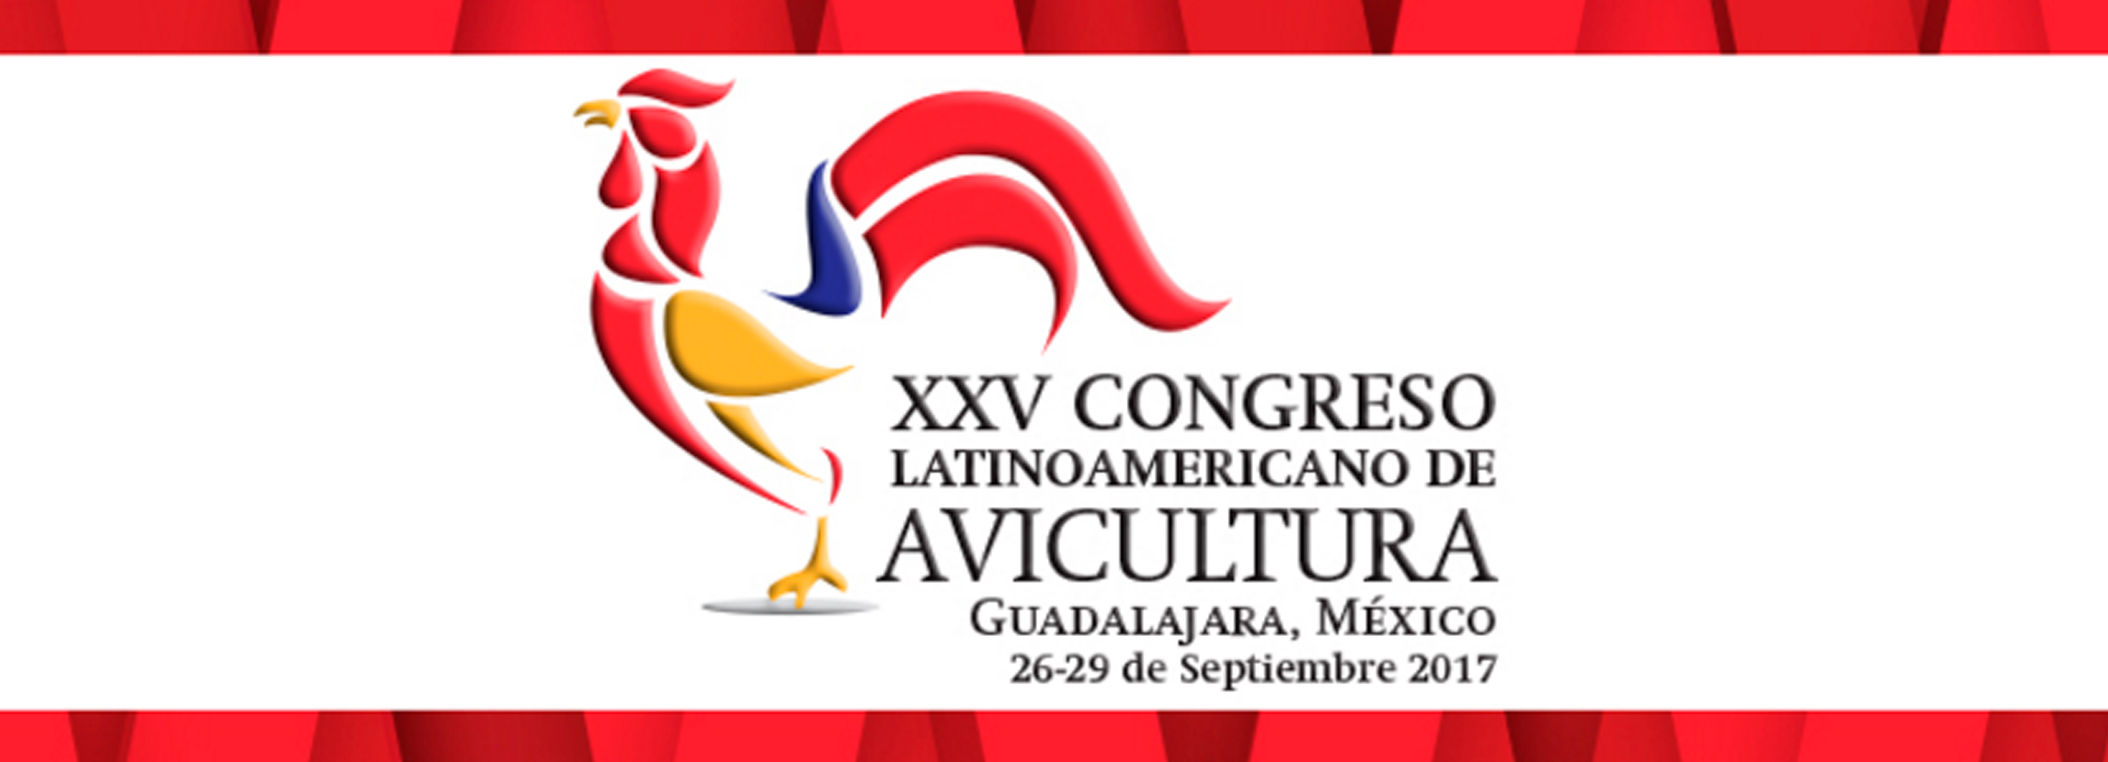 Argentina obtuvo tres premios en el Congreso Latinoamericano de Avicultura en México